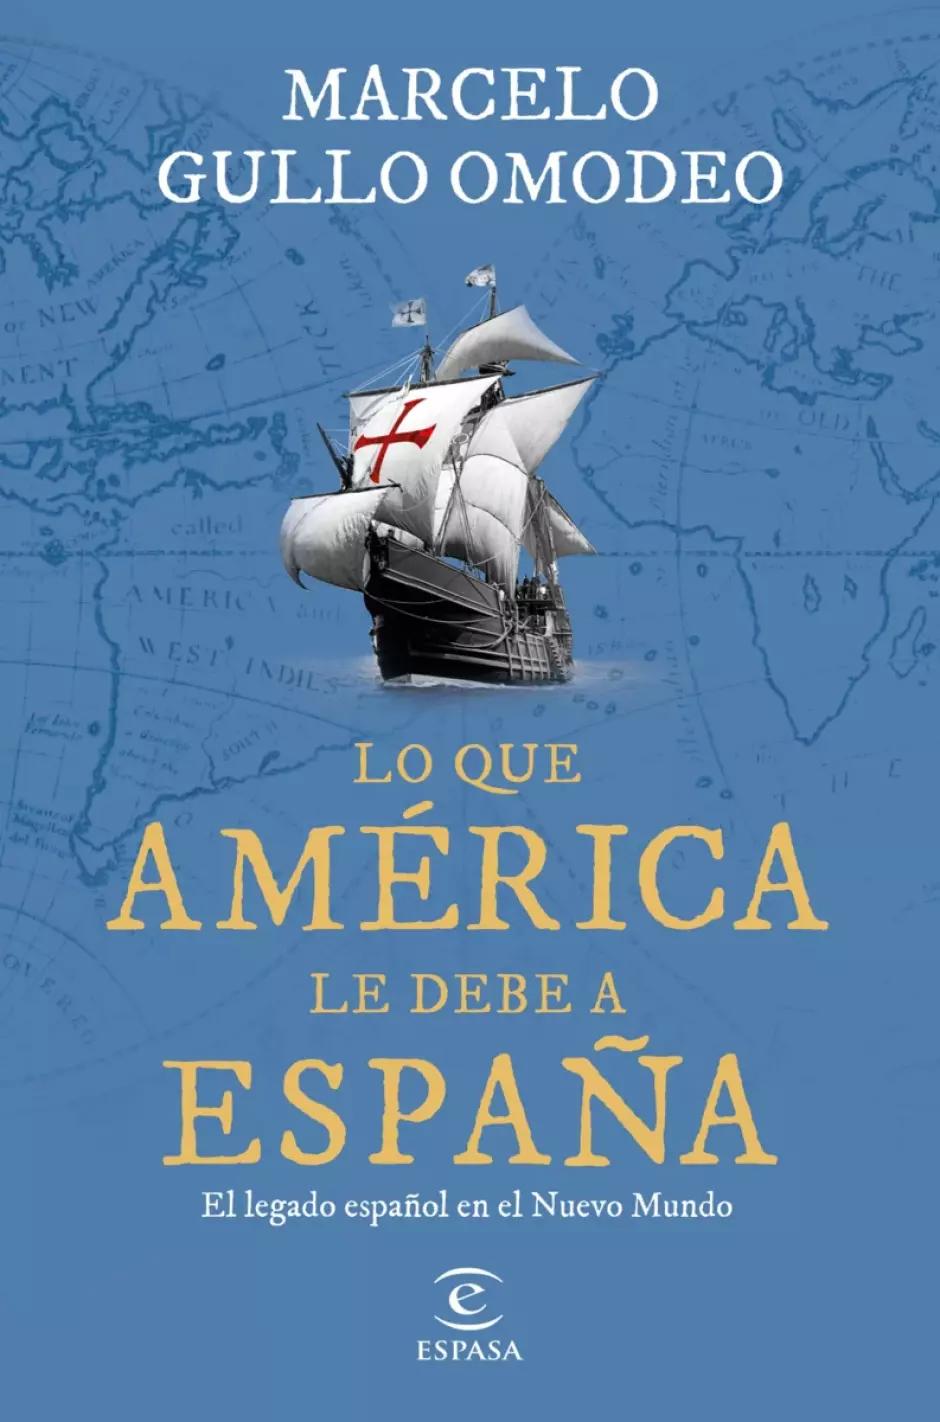 'Lo que América le debe a España', de Marcelo Gullo